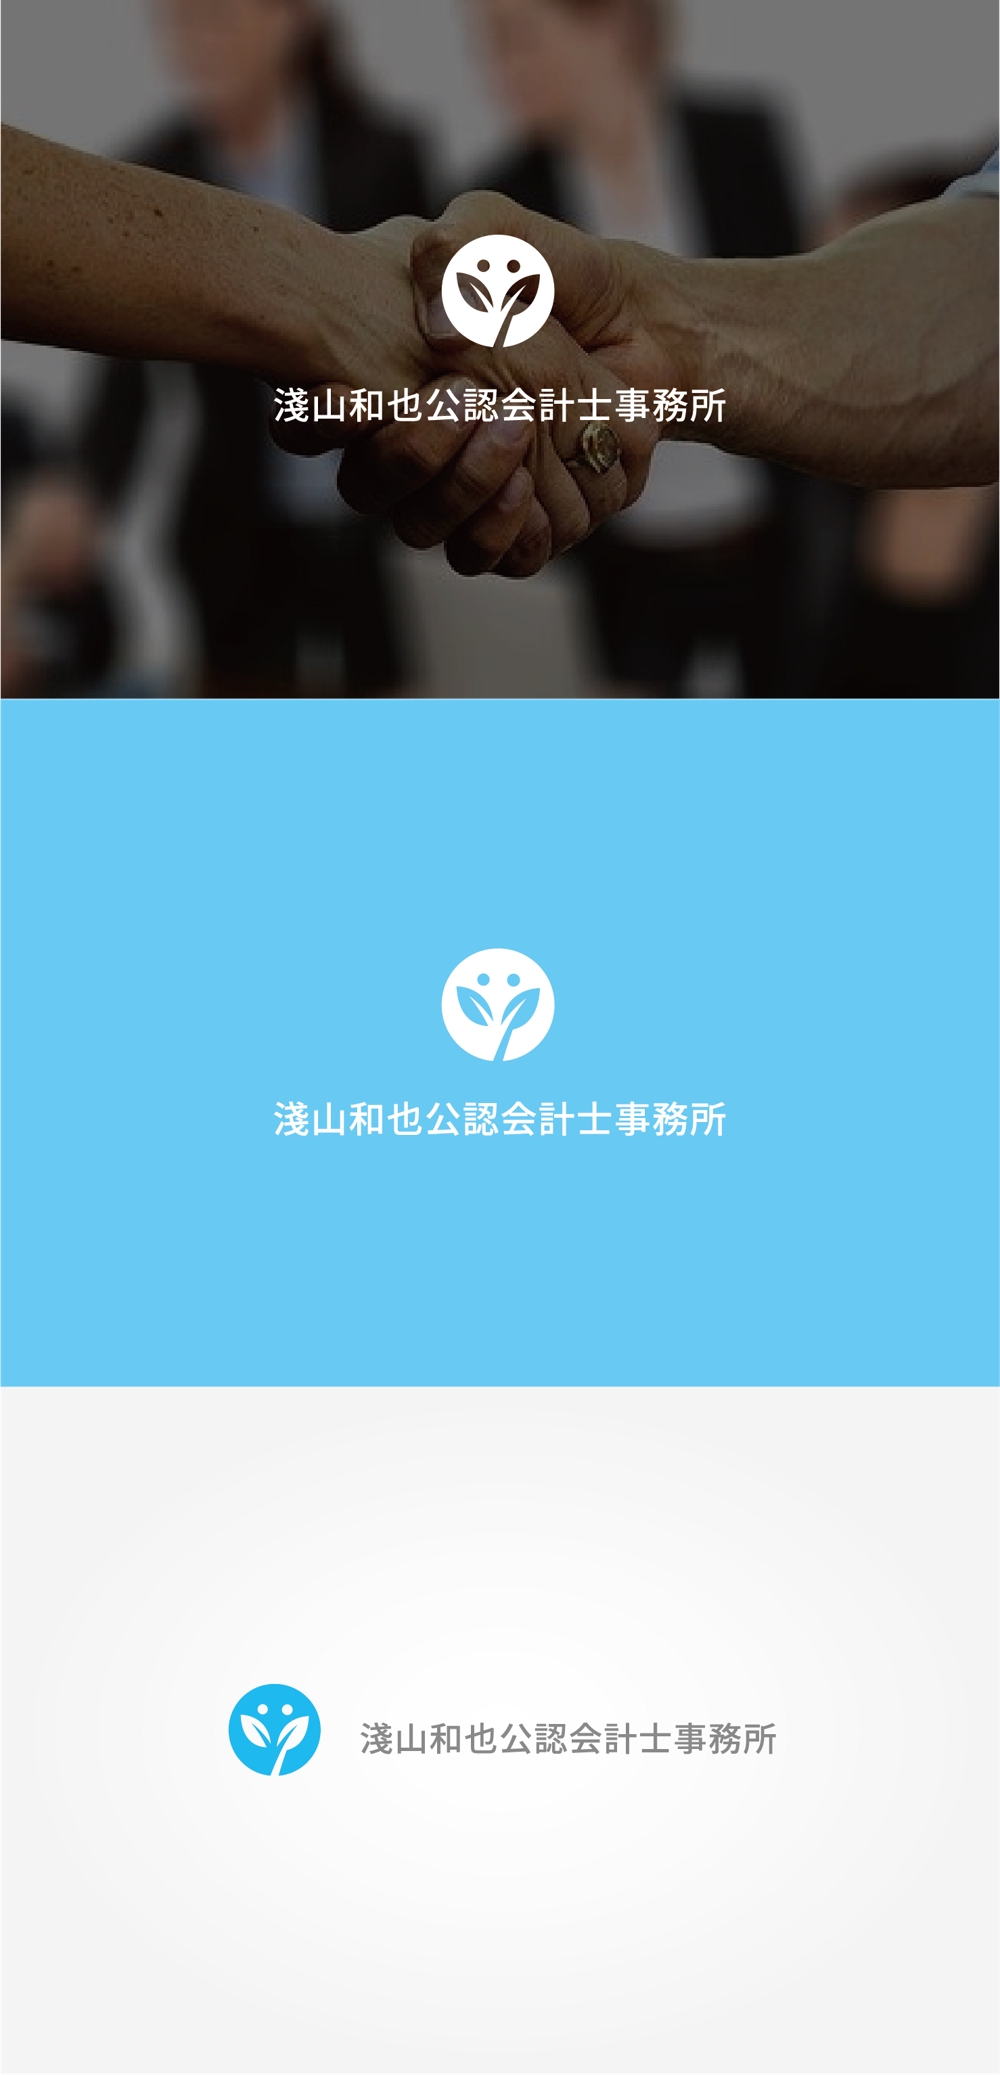 「淺山和也公認会計士事務所」のロゴ